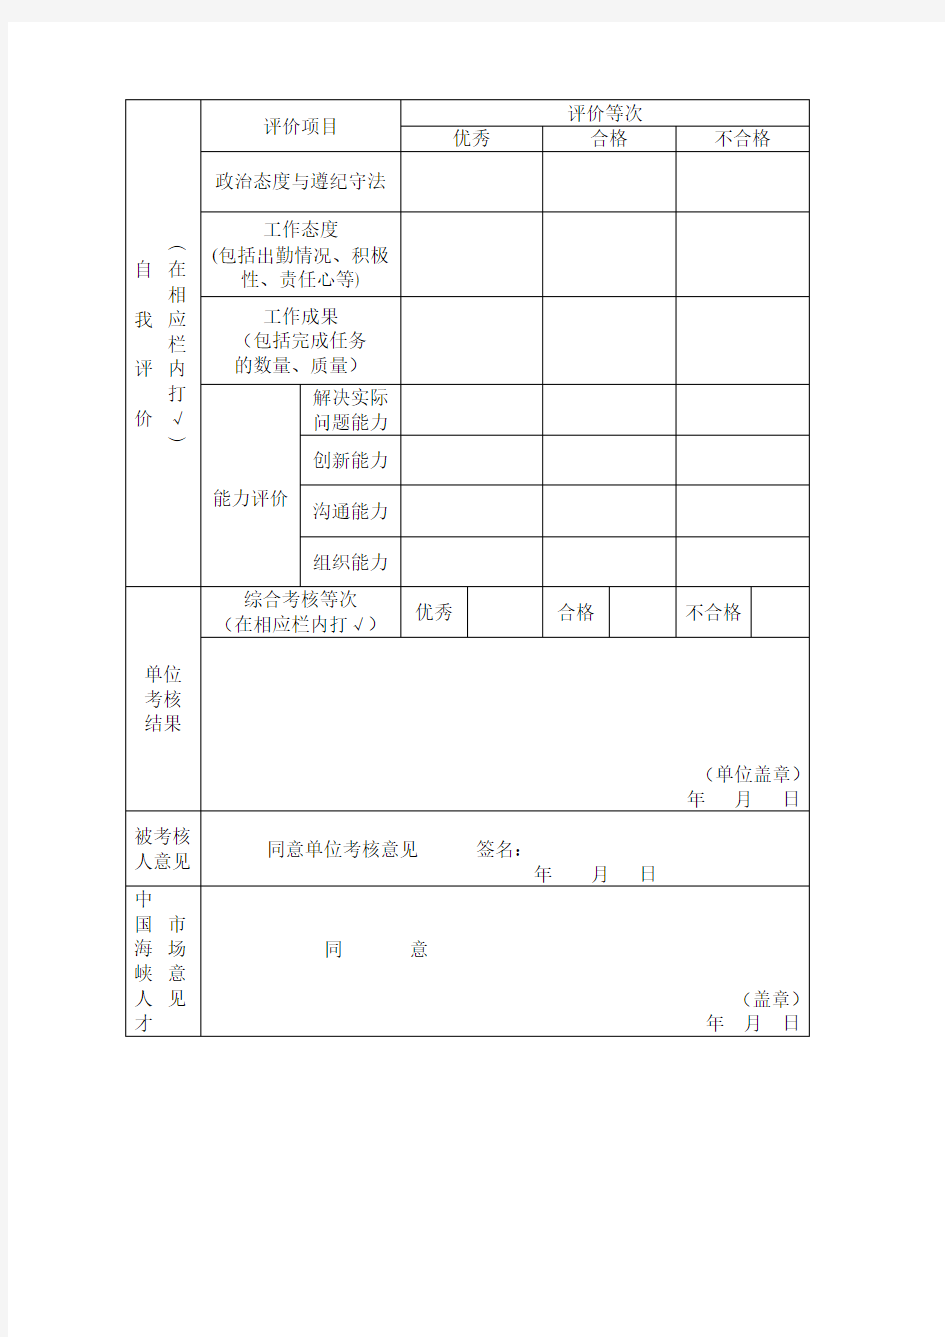 中国海峡人才市场人事委托代理人员年度考核登记表